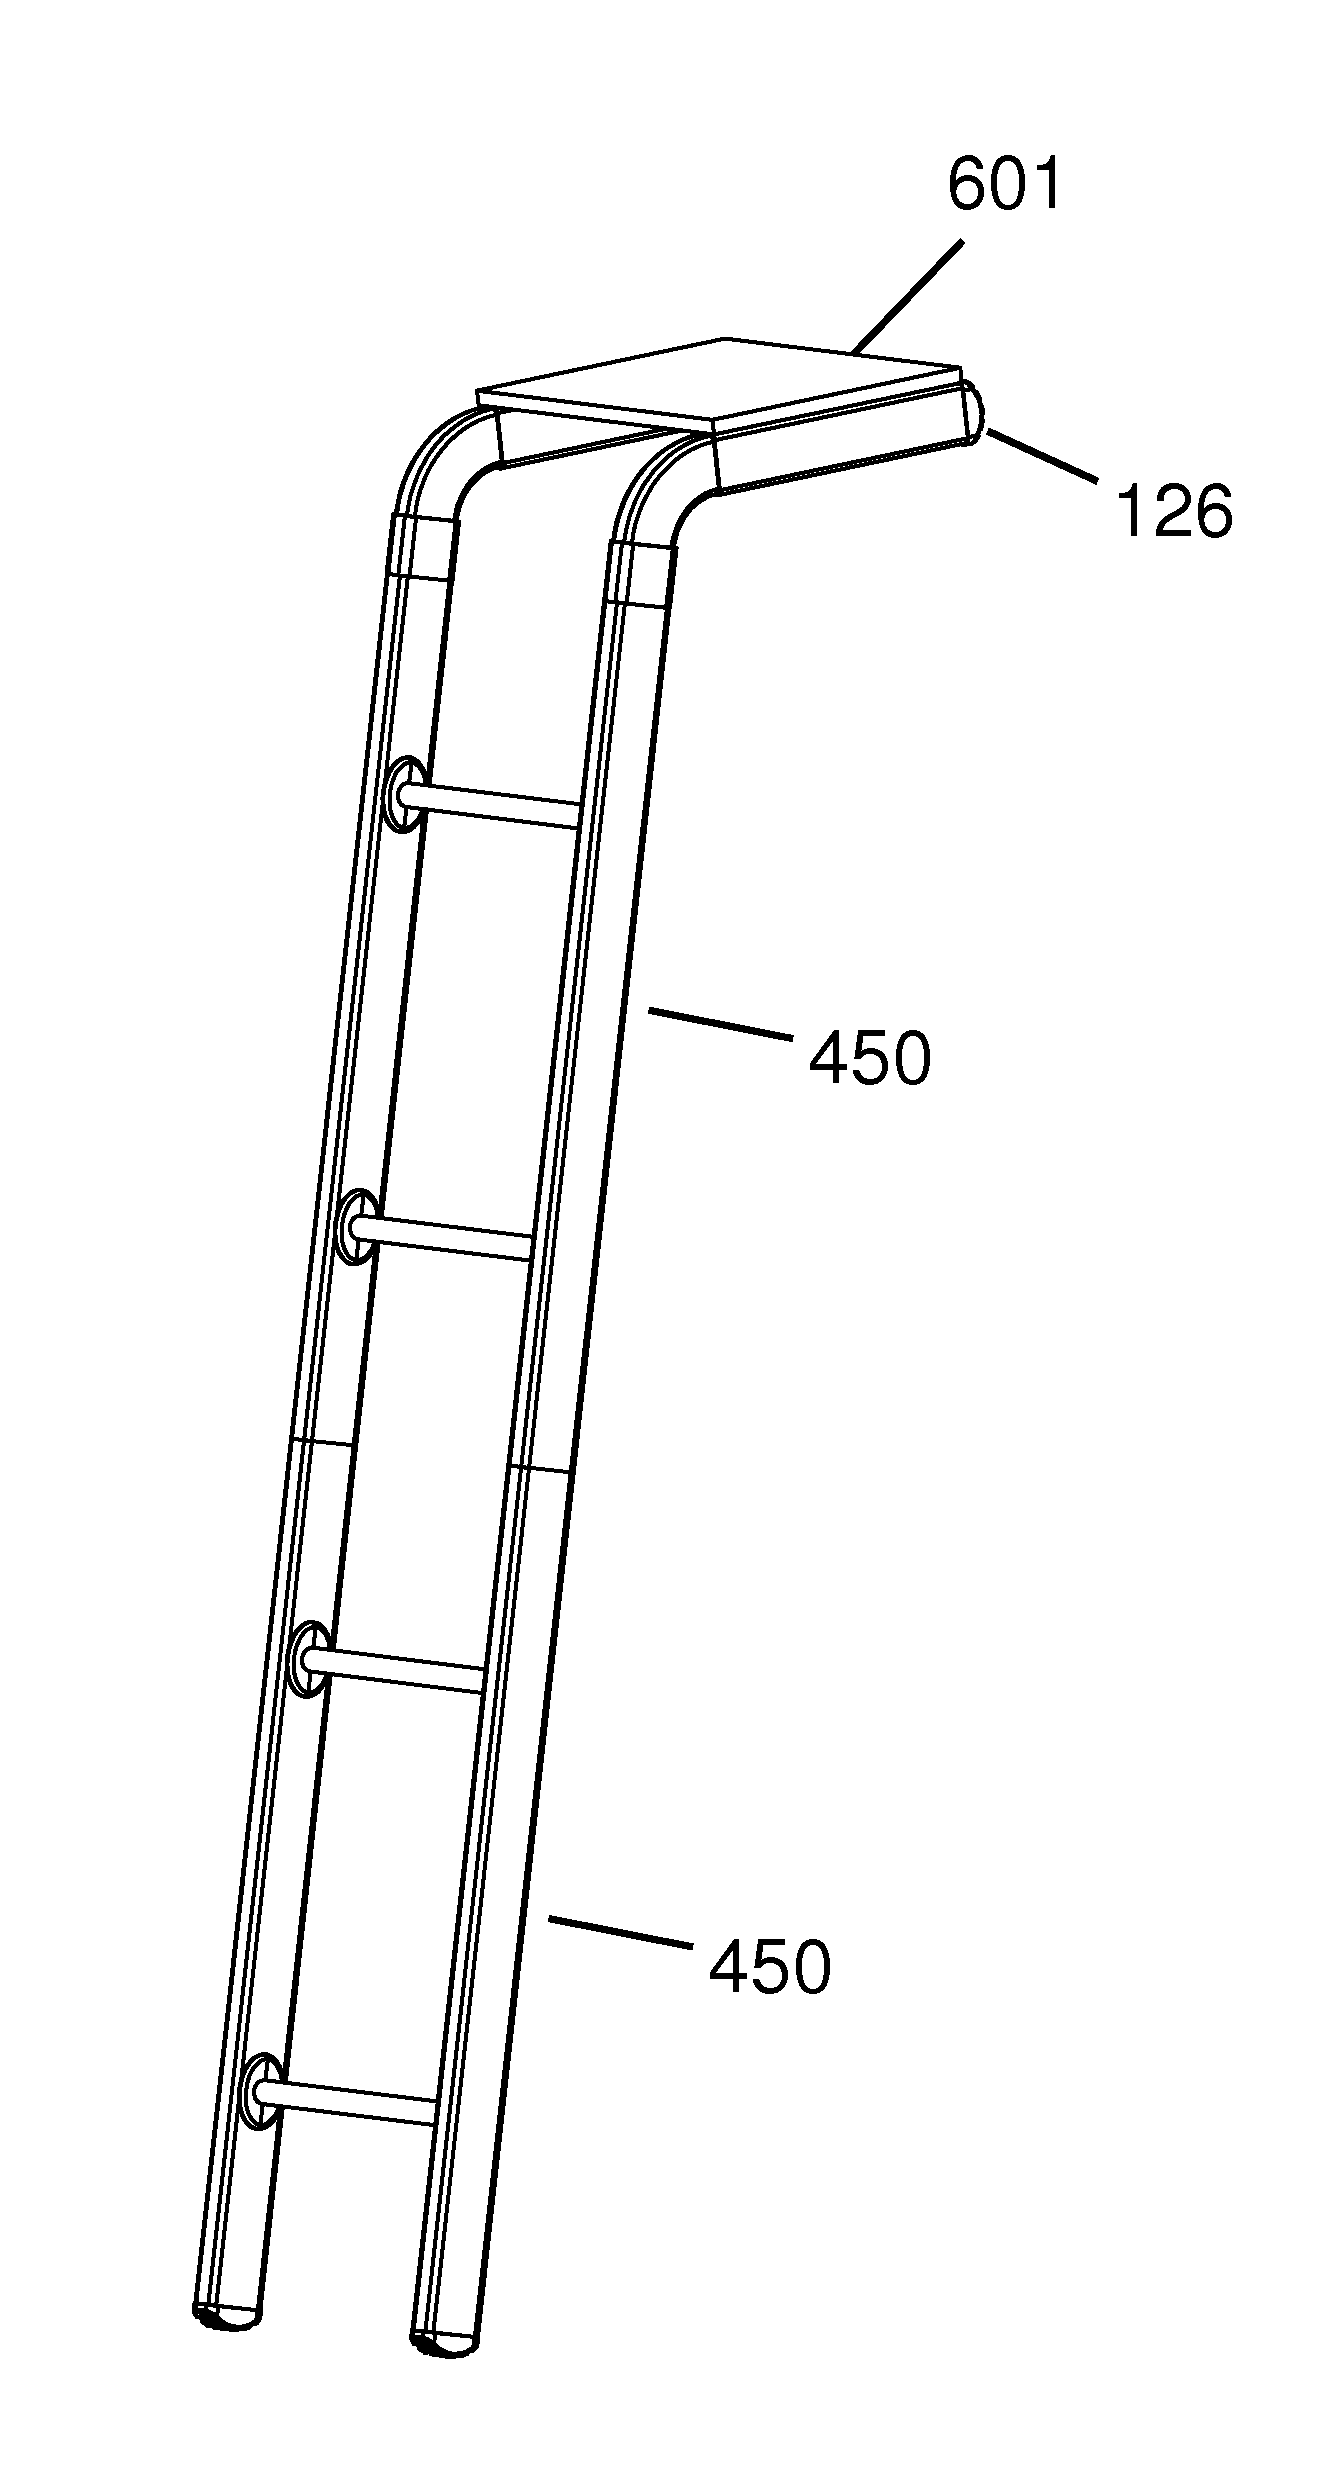 Ultra lightweight segmented ladder/bridge system accessories